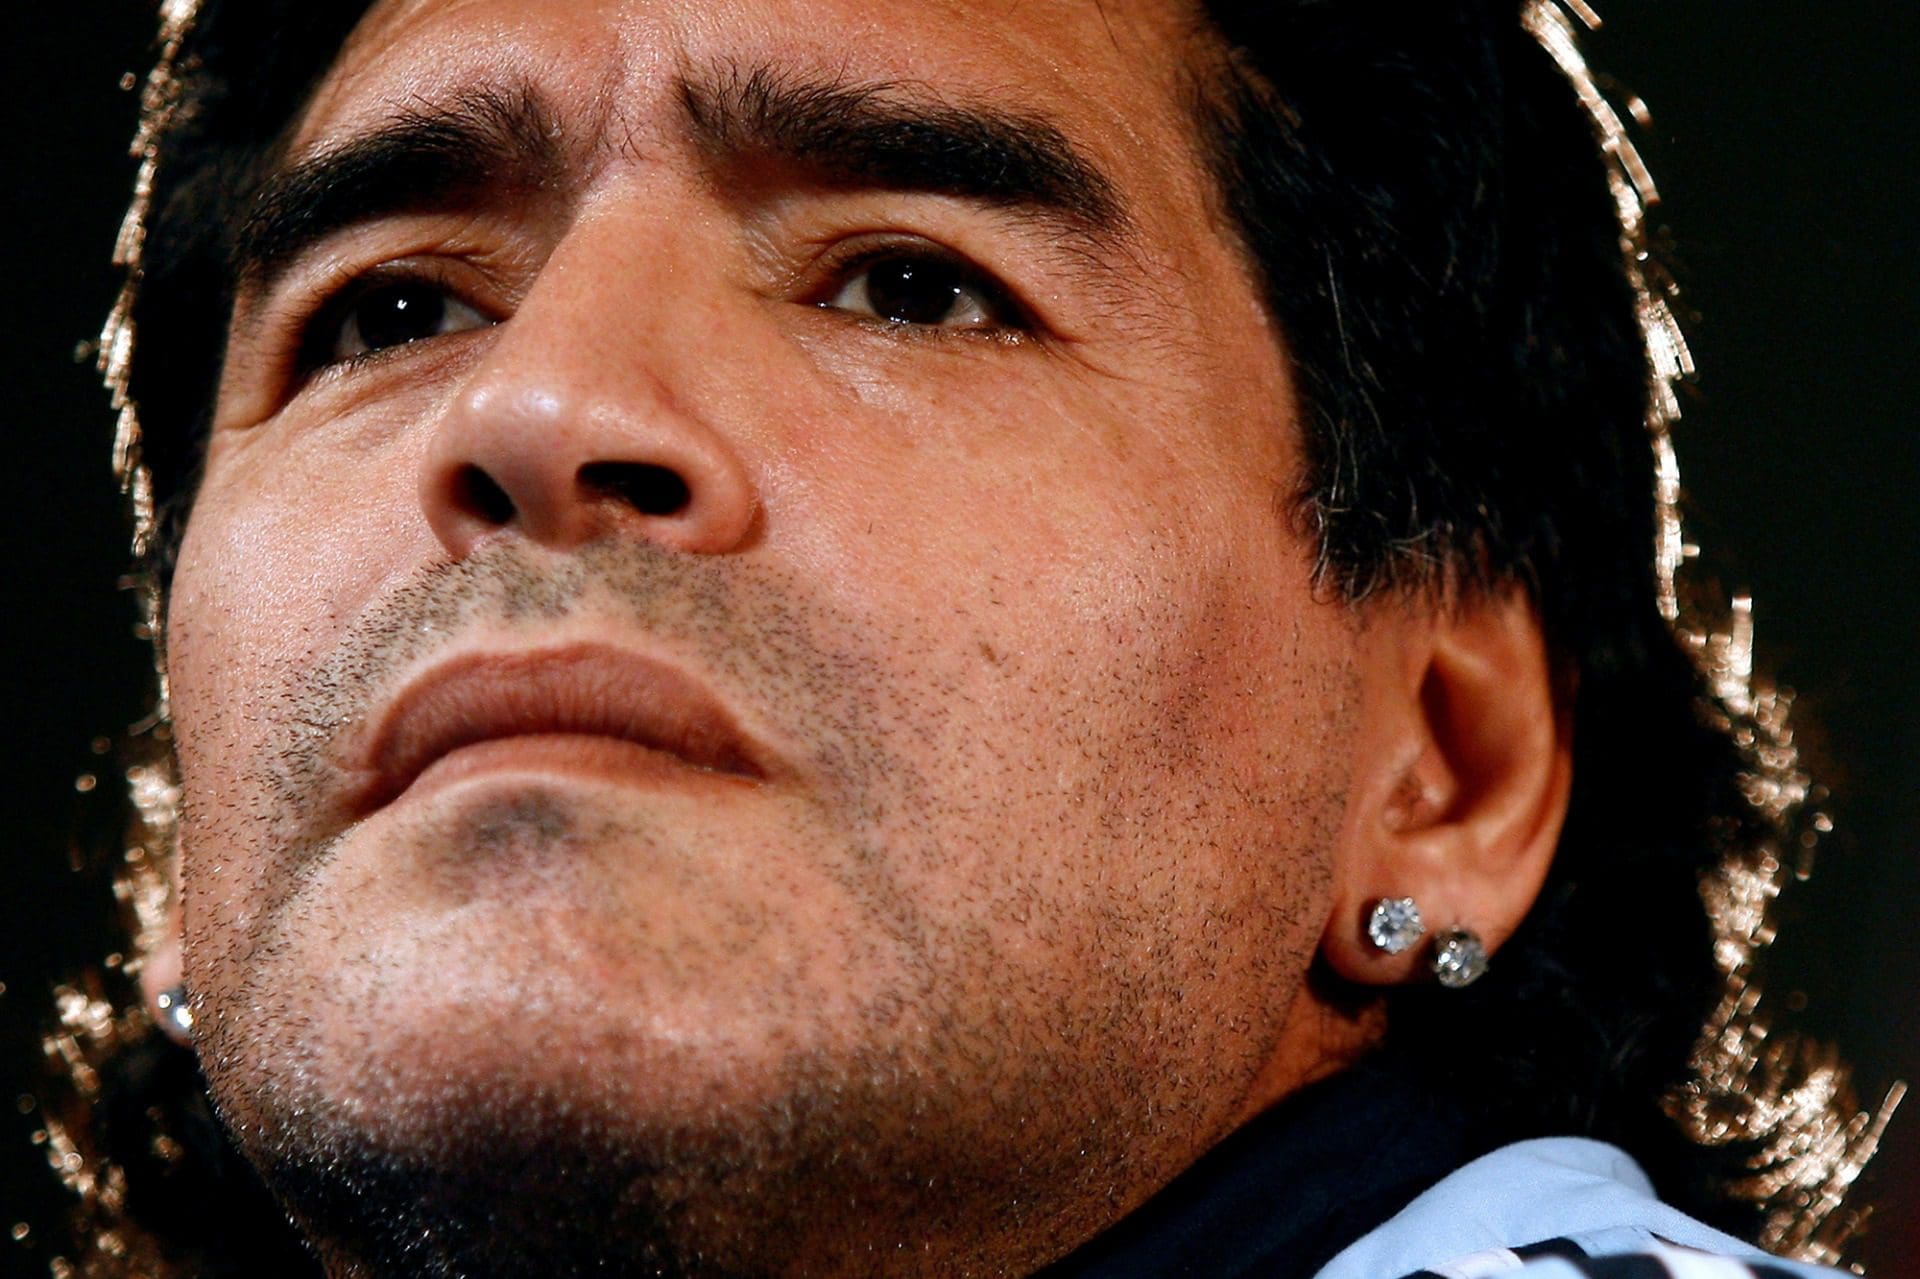 Dois anos sem Maradona - Mundo perdeu o mágico argentino, mas a mística continua.